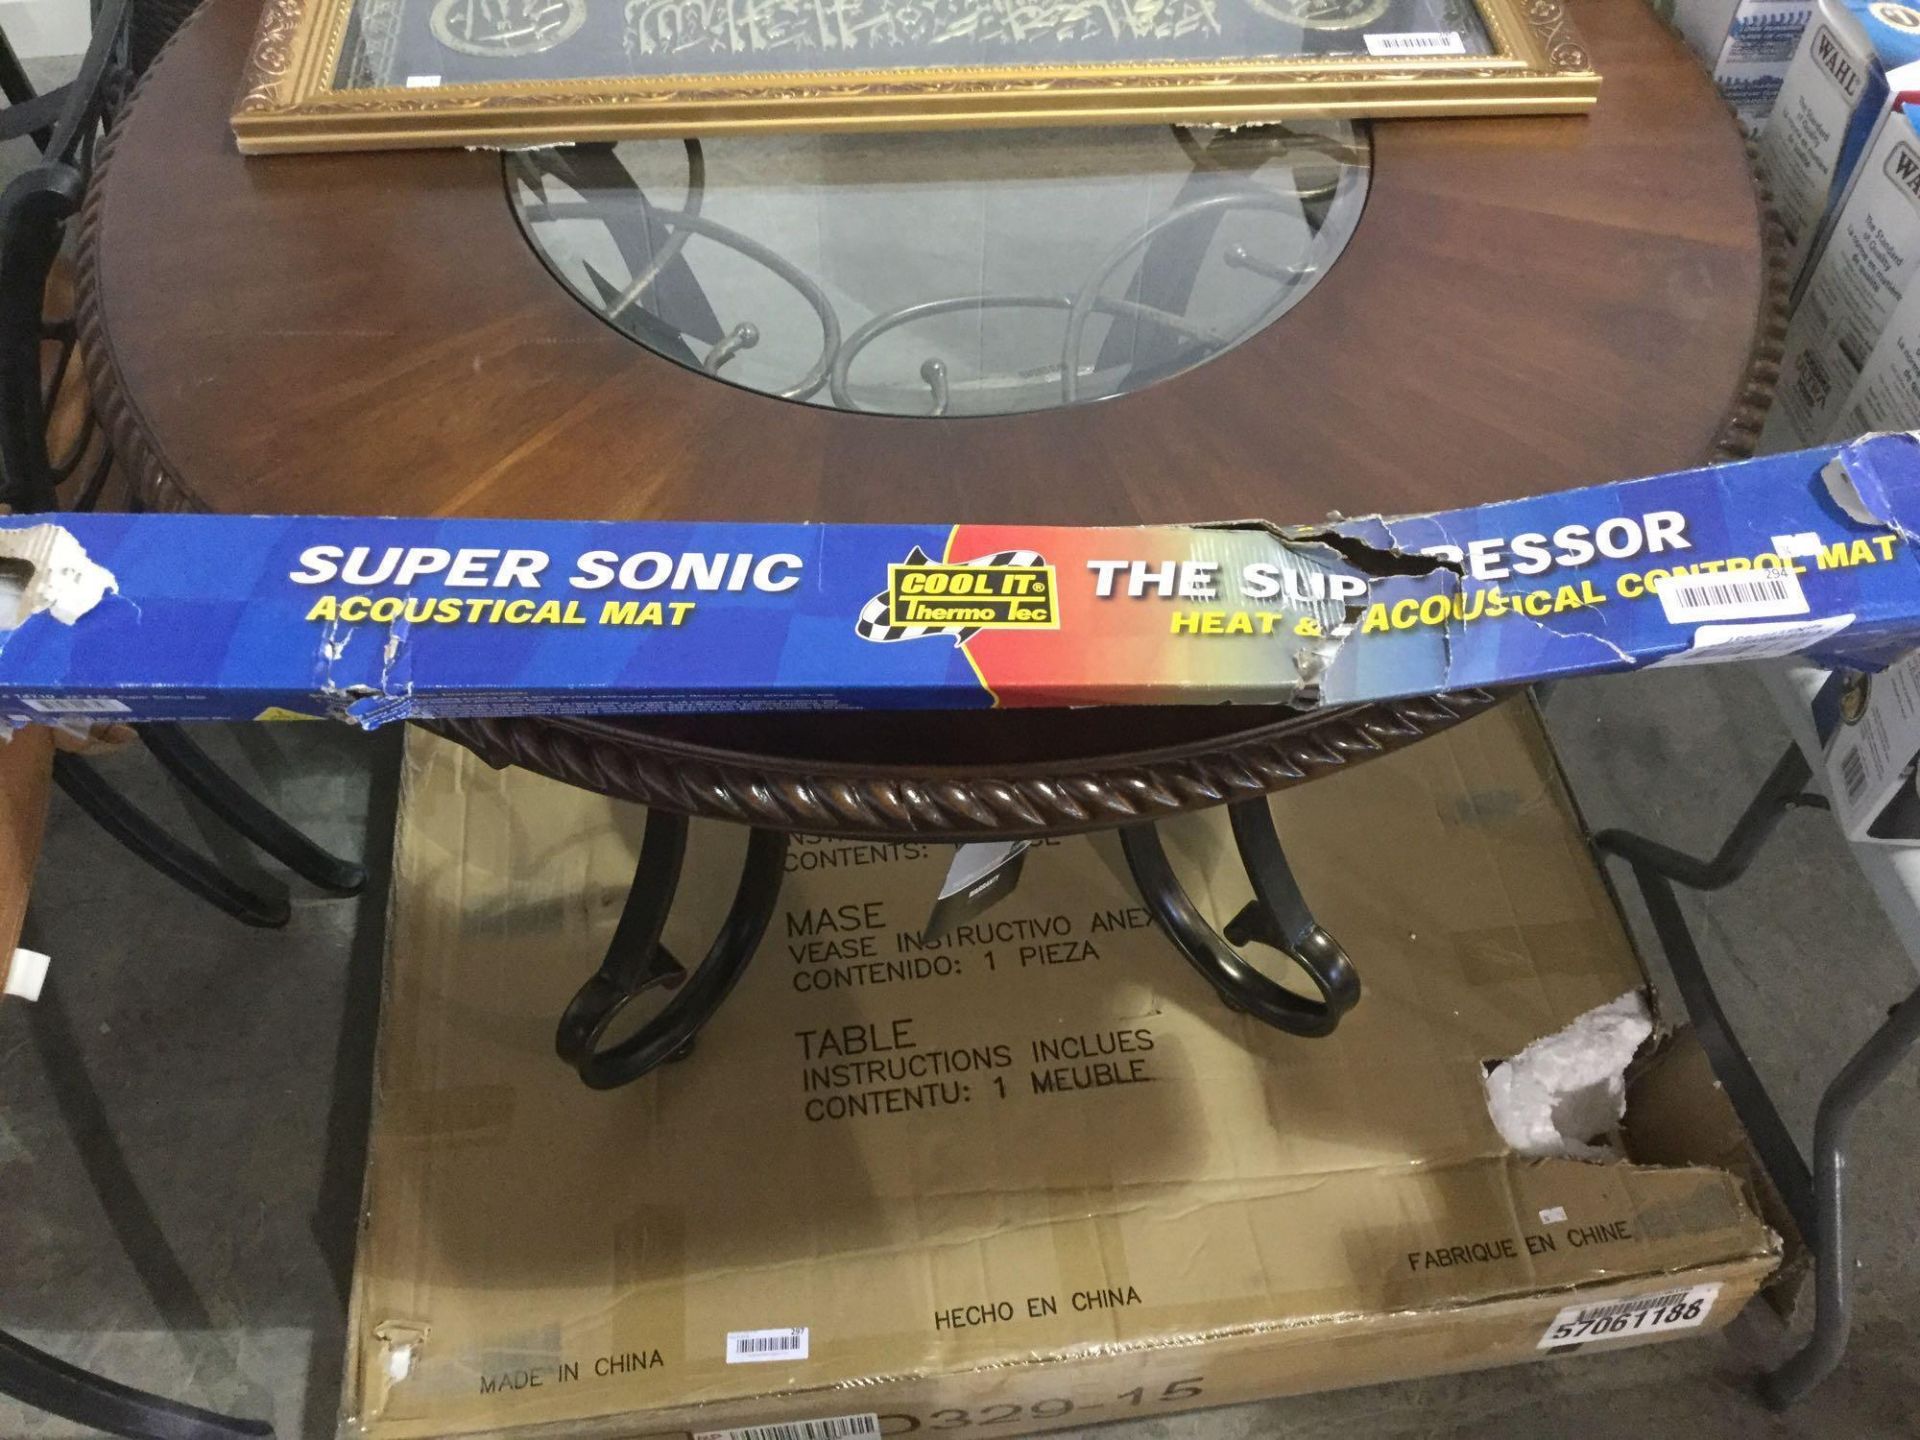 Super Sonic Acoustical Mat